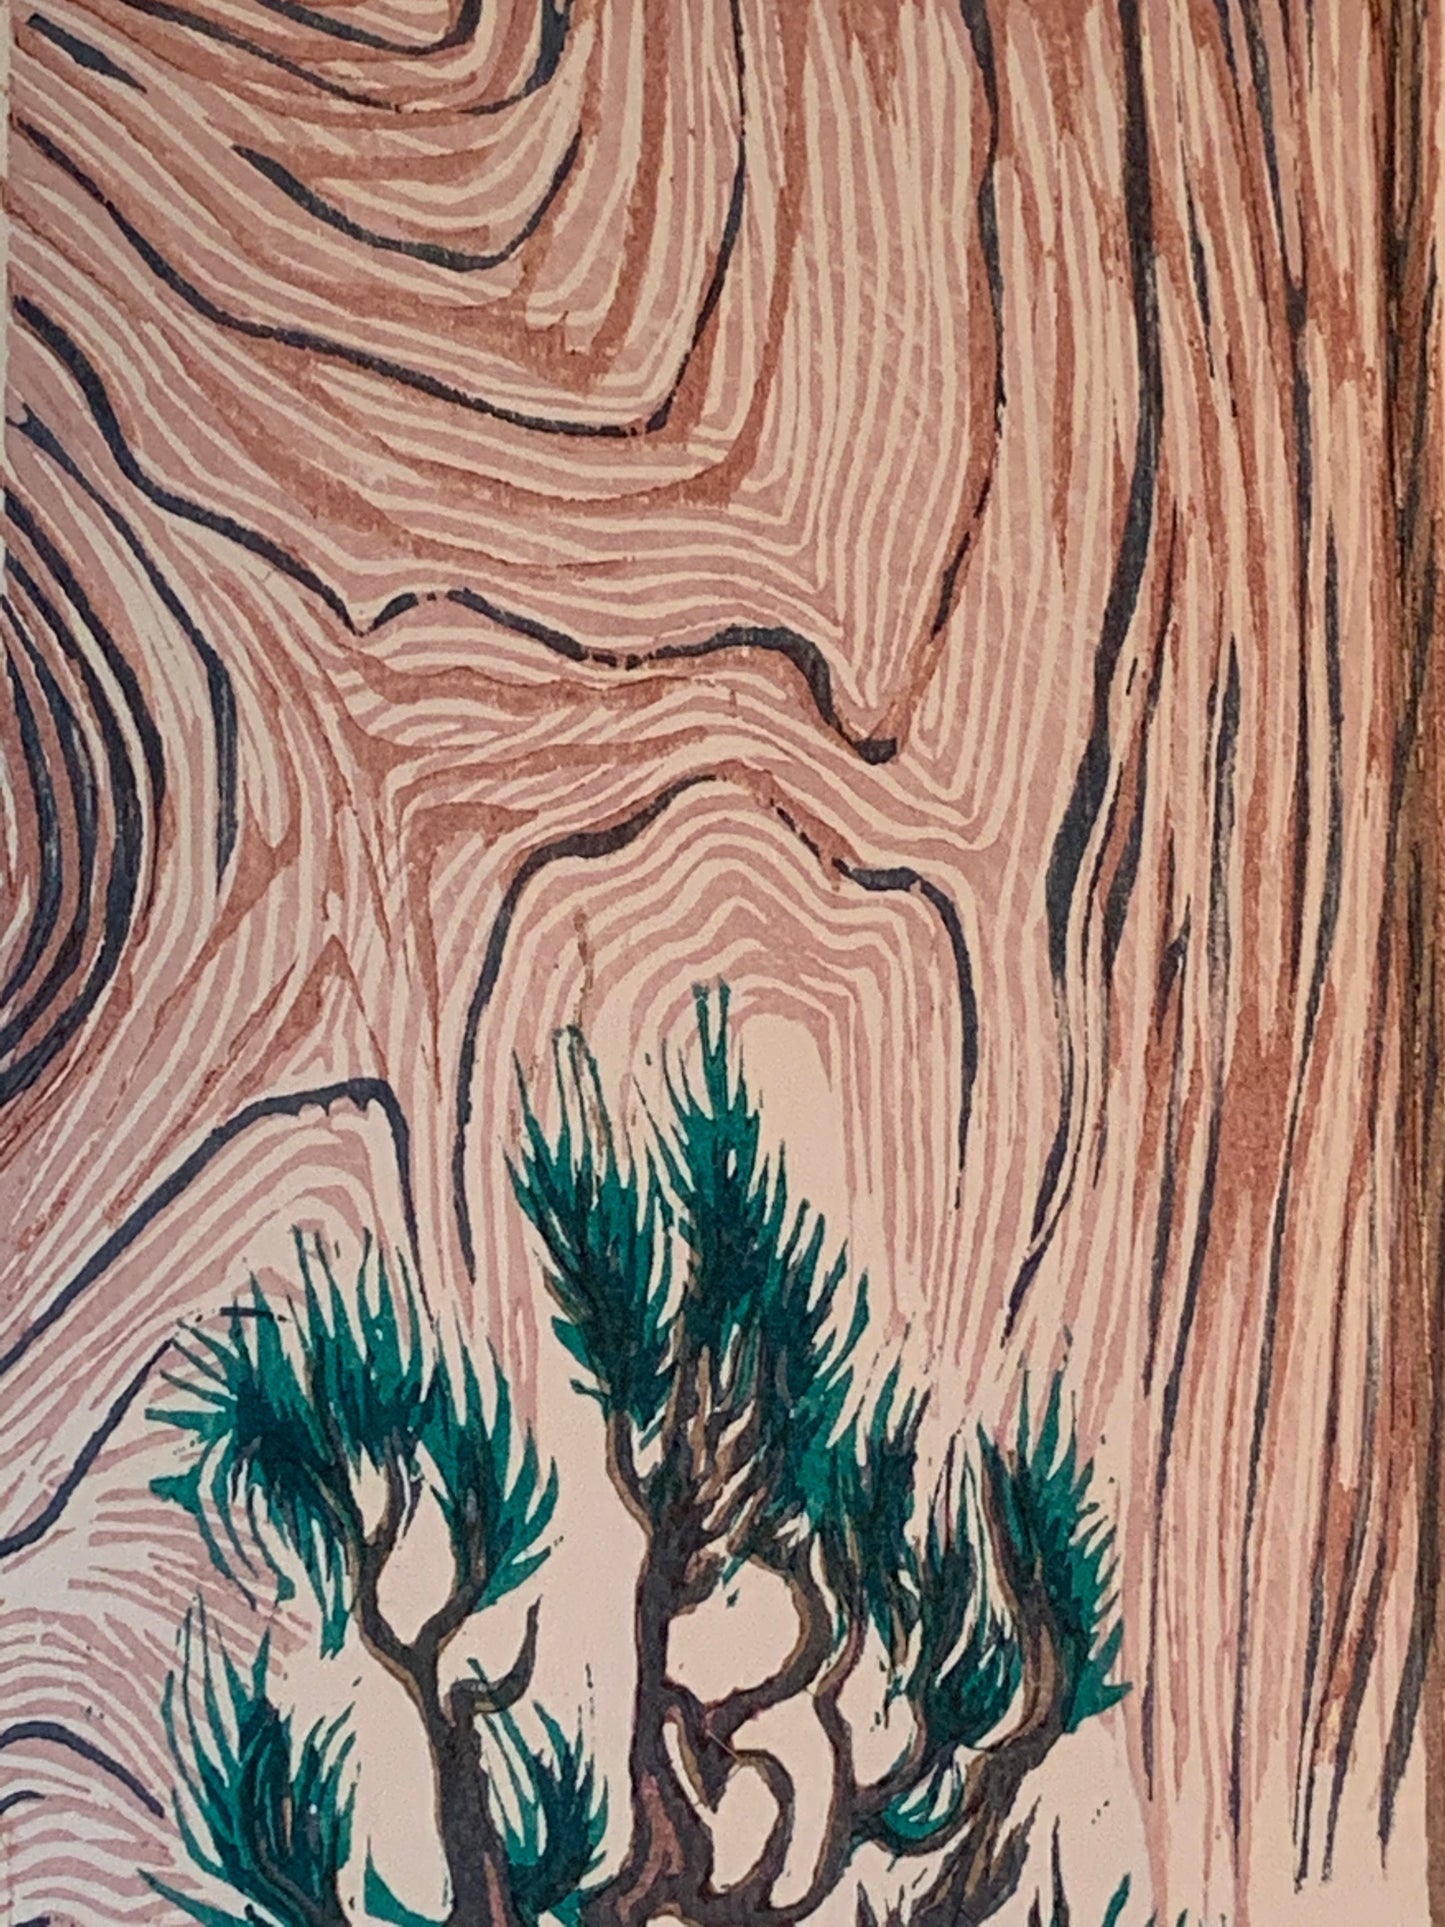 Color Woodblock Print White Pine Cliff Hanger National Park Zion Landscape